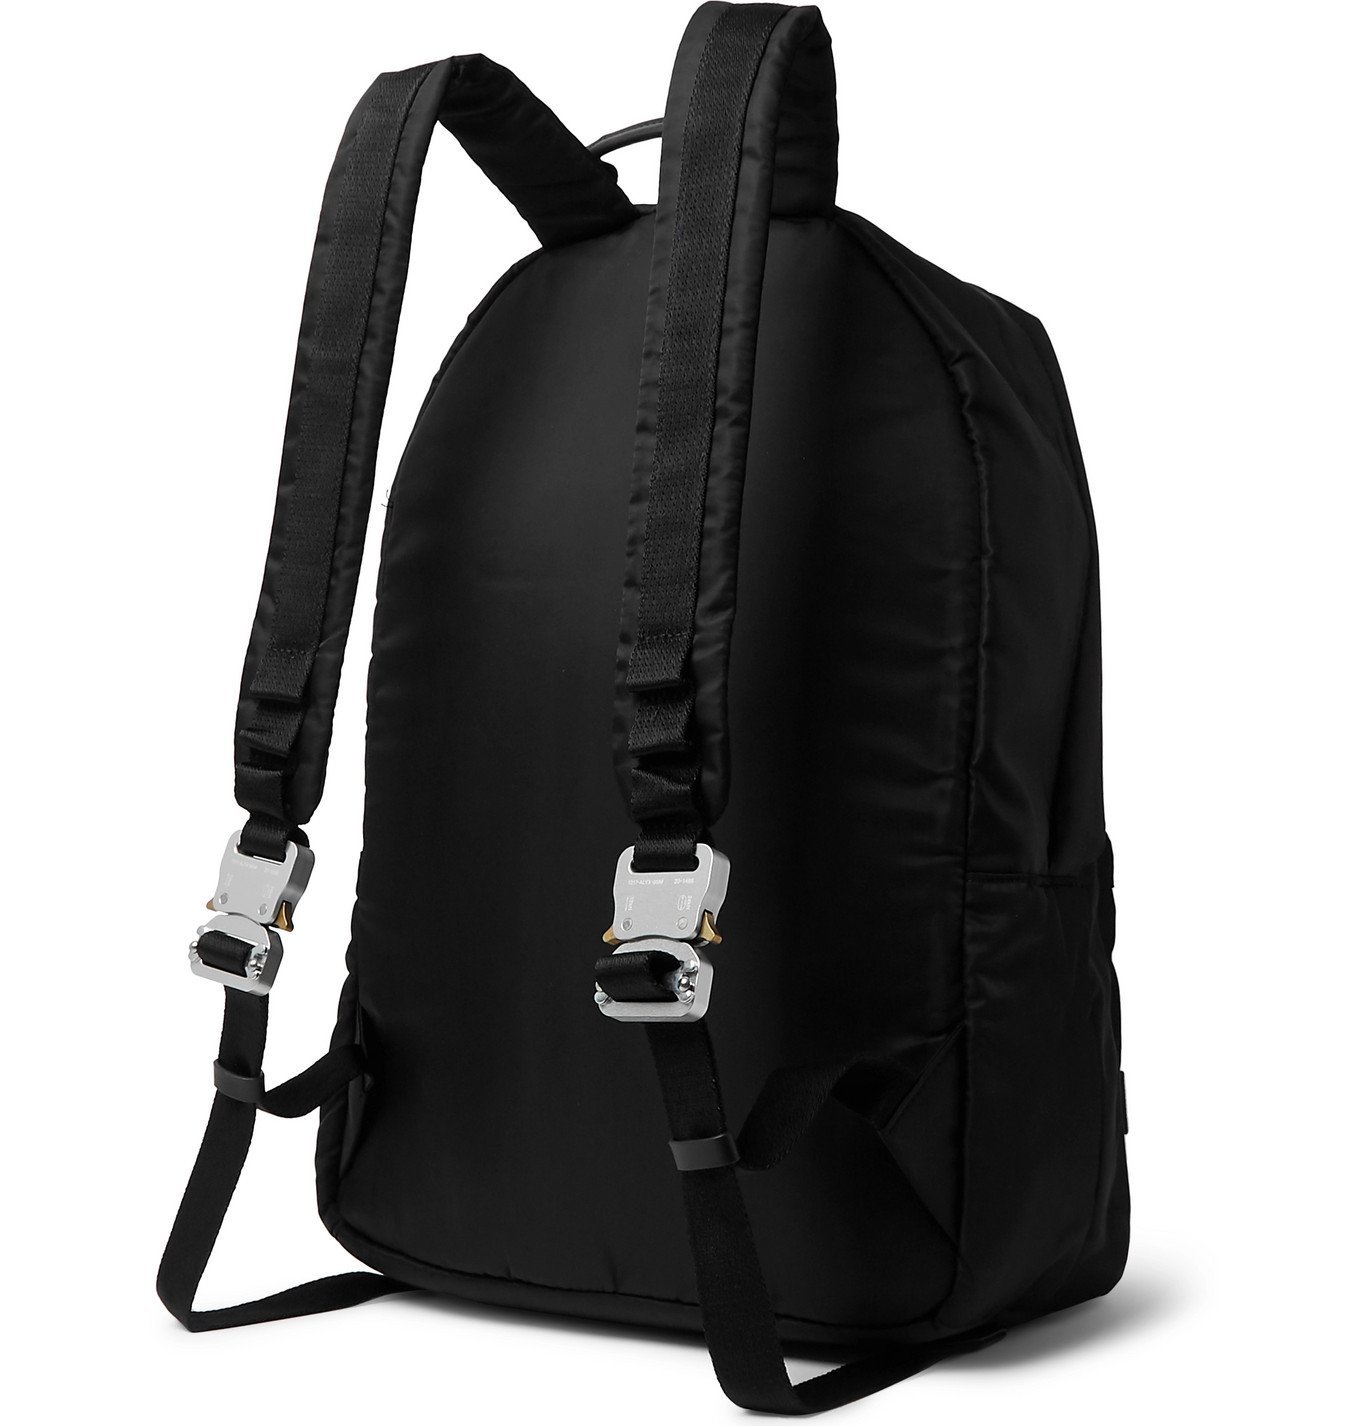 1017 ALYX 9SM - Tricon Nylon Backpack - Black 1017 ALYX 9SM